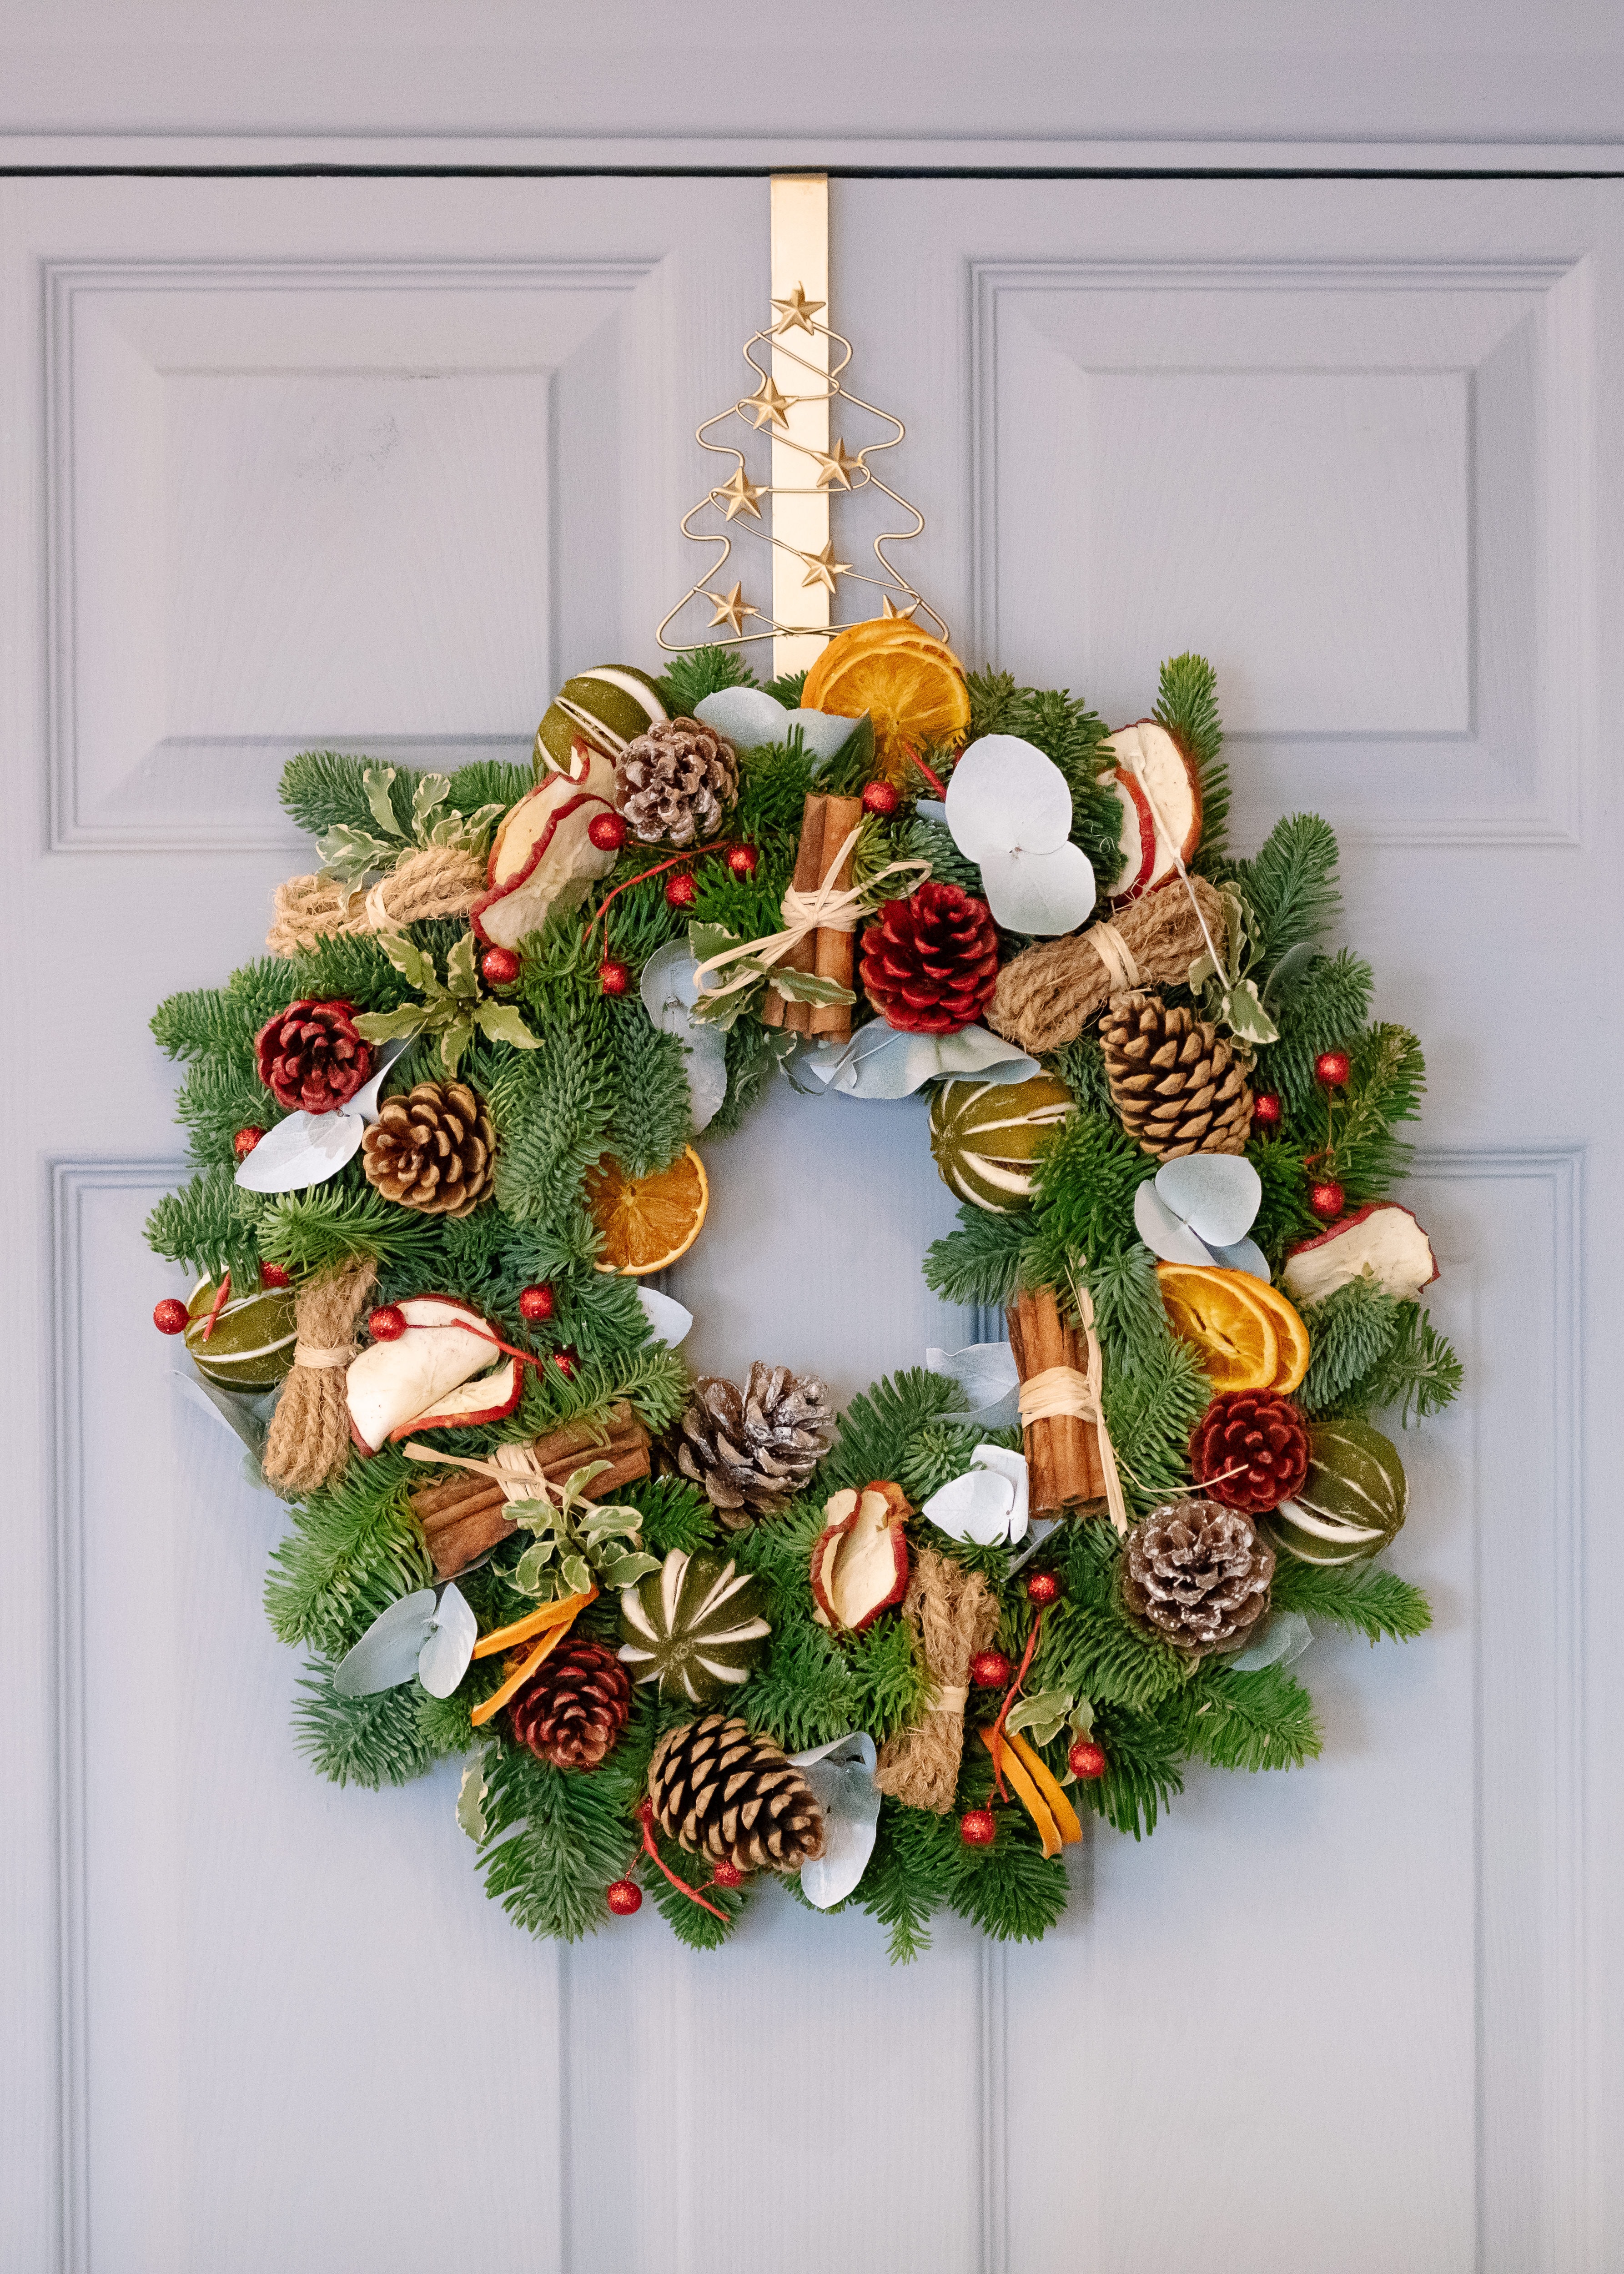 Christmas Wreath on a house door